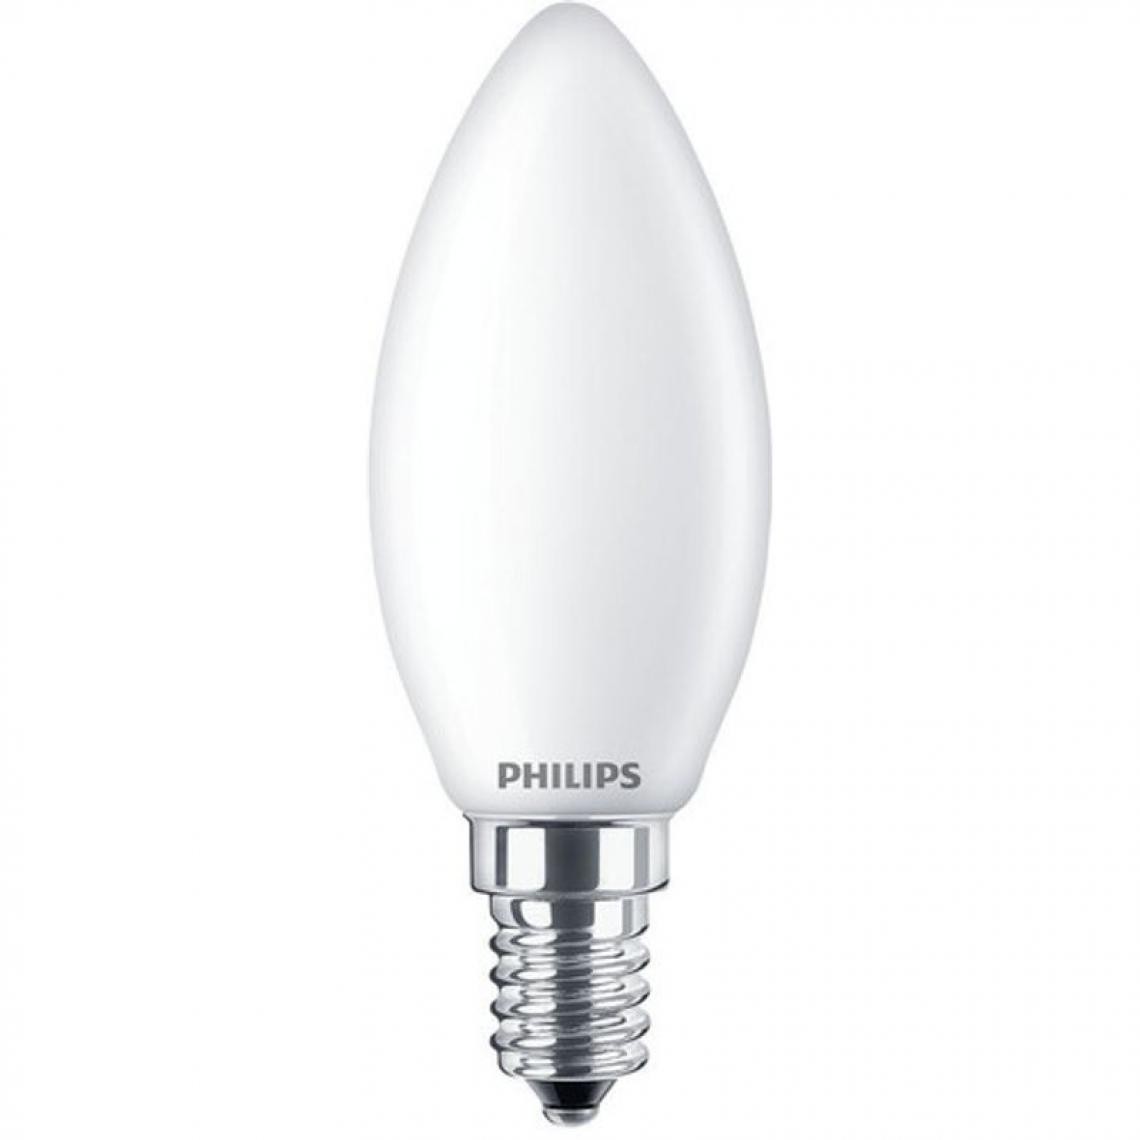 Philips - Lot de 3 ampoules LED E14 PHILIPS 40W forme flamme - Ampoules LED